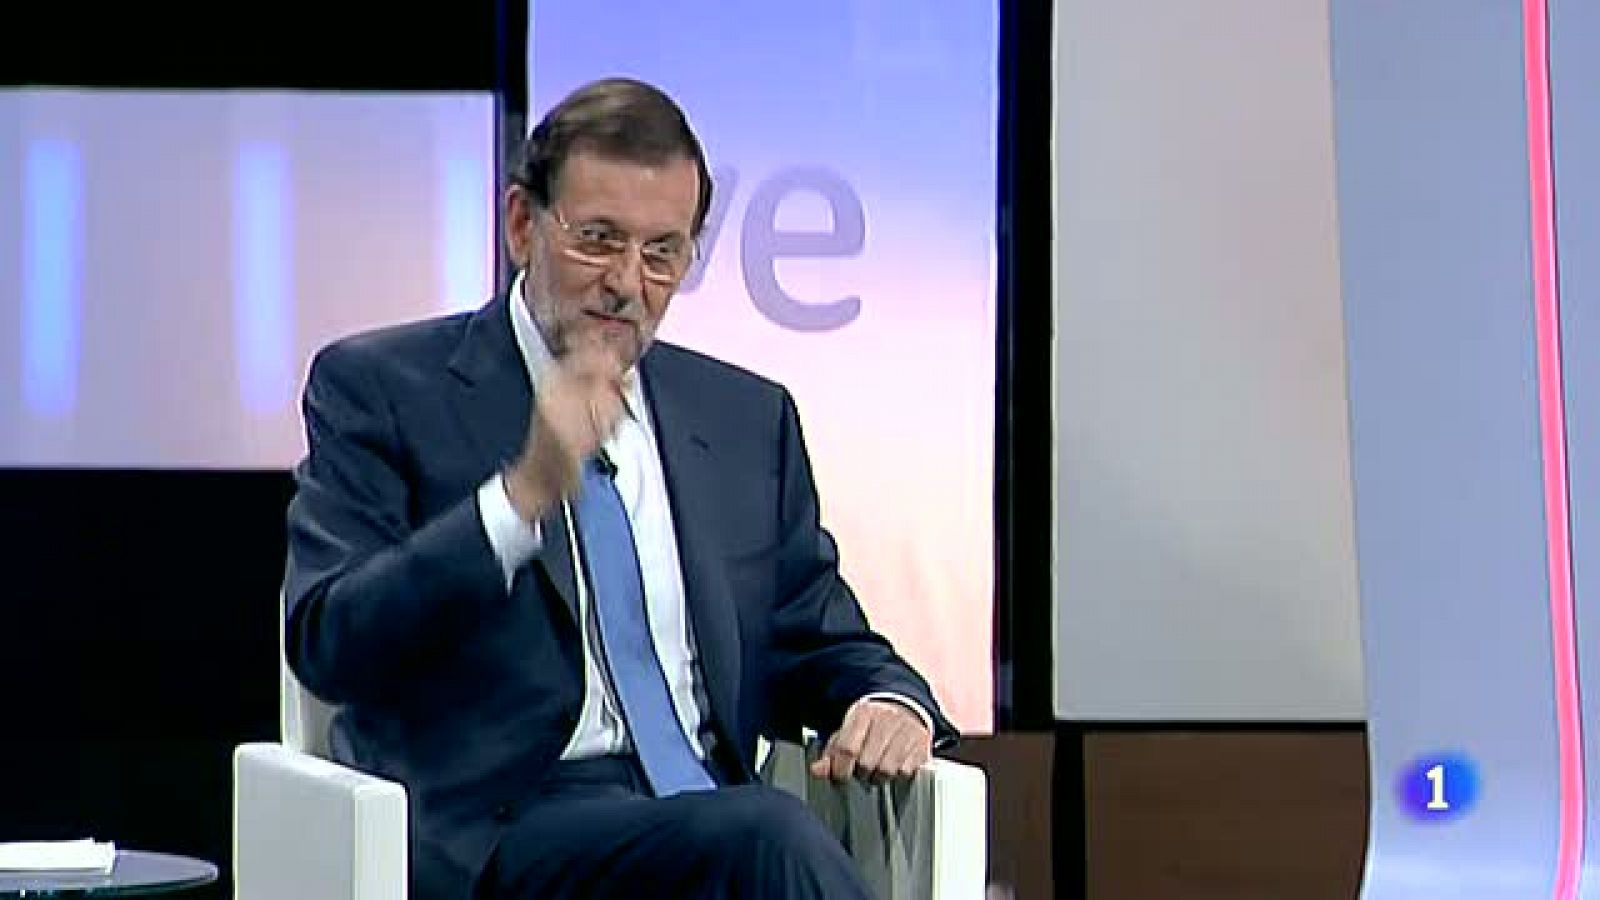 El presidente del Gobierno Mariano Rajoy ha insistido en que lo importante es cumplir con el objetivo de déficit público del 6,3 % del PIB comprometido para este año y del 4,5 para el año que viene.